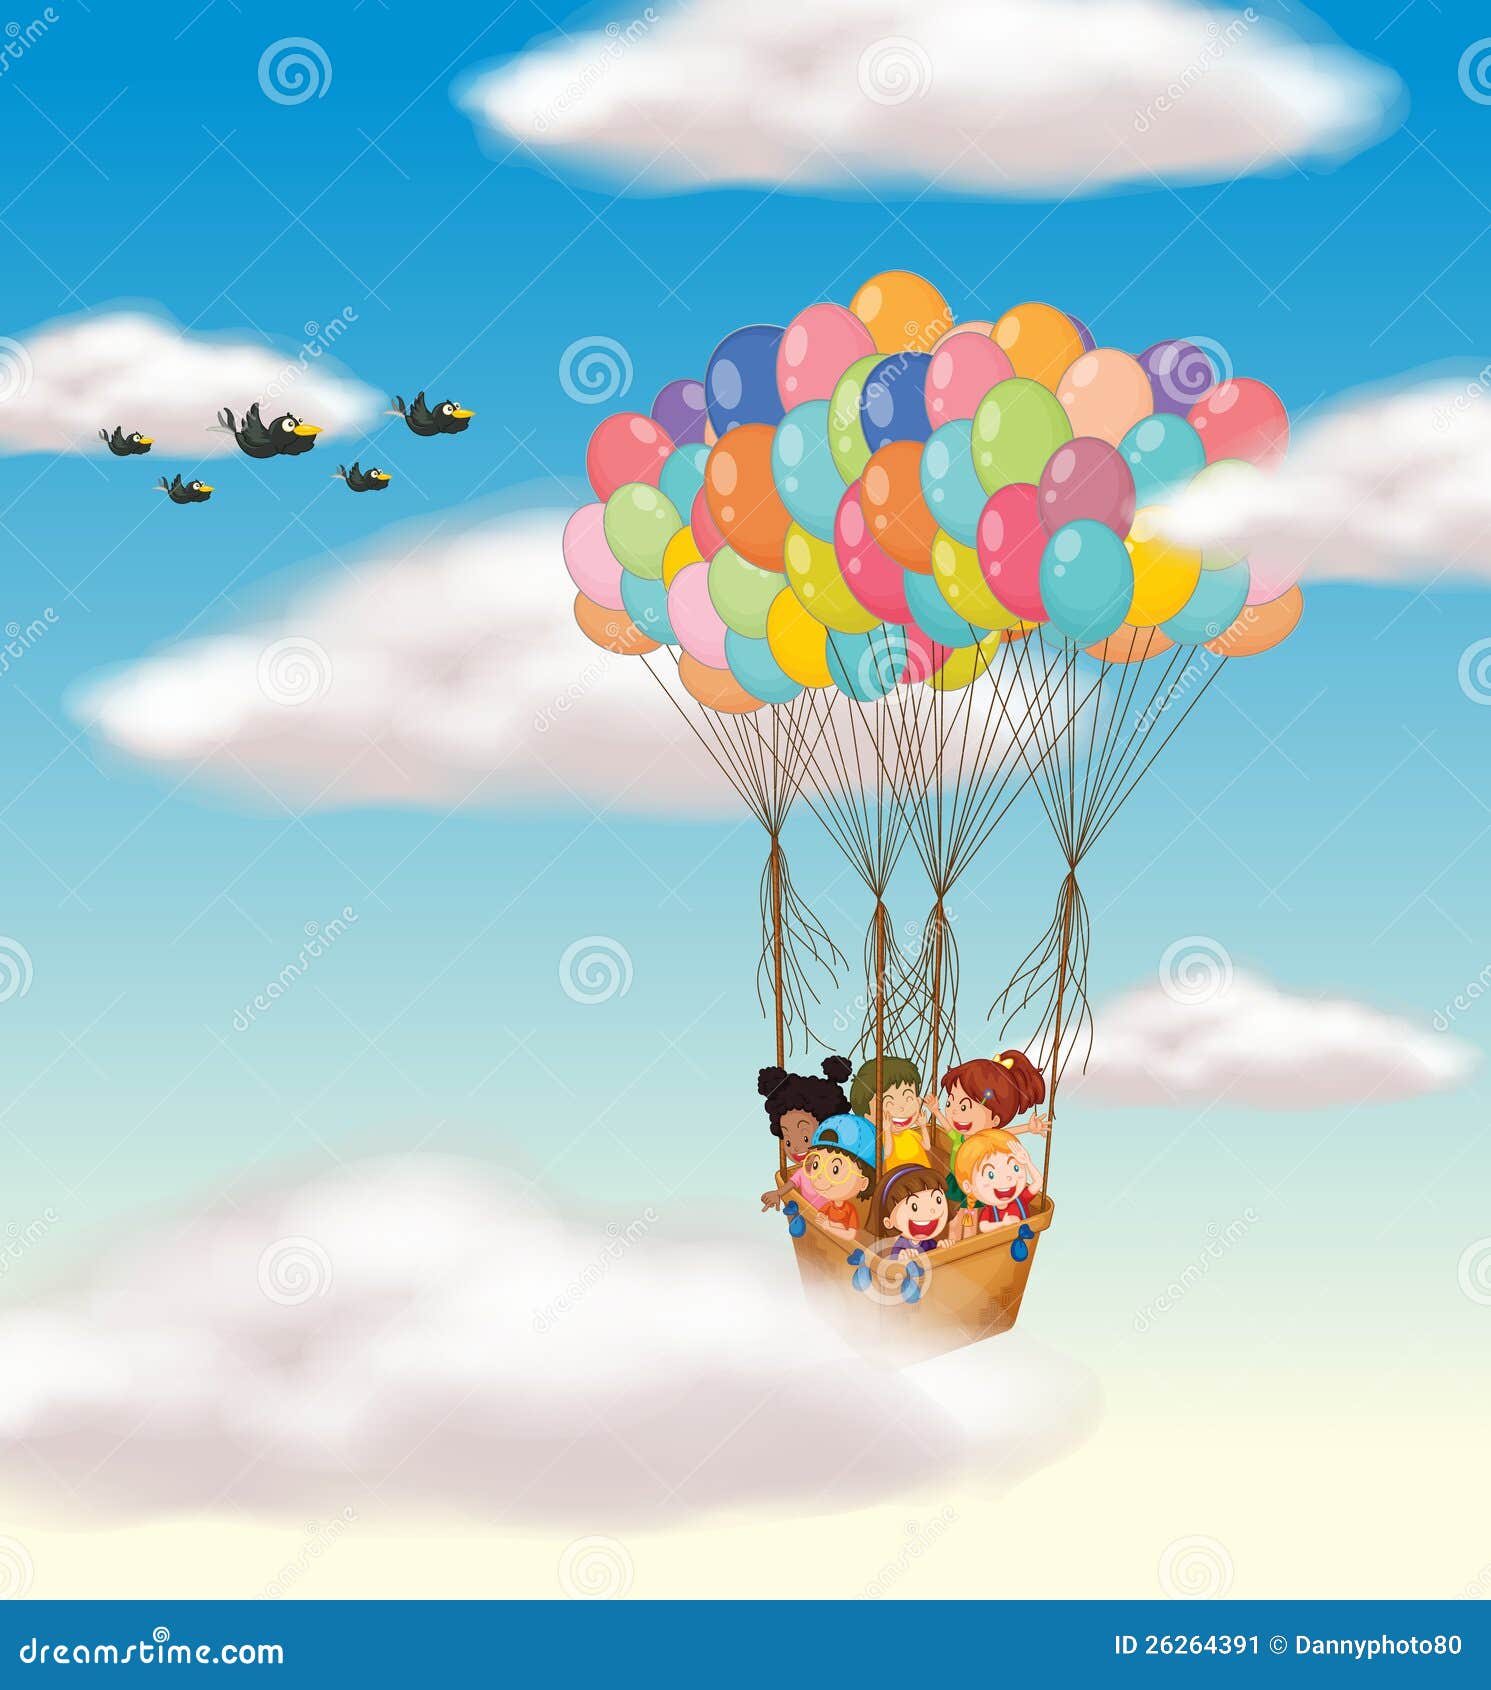 В страну знаний на воздушном шаре. Дети на воздушном шаре. Корзина улетает на воздушных шариках. Путешествие на воздушном шаре для детей. Воздушный шар с корзиной.